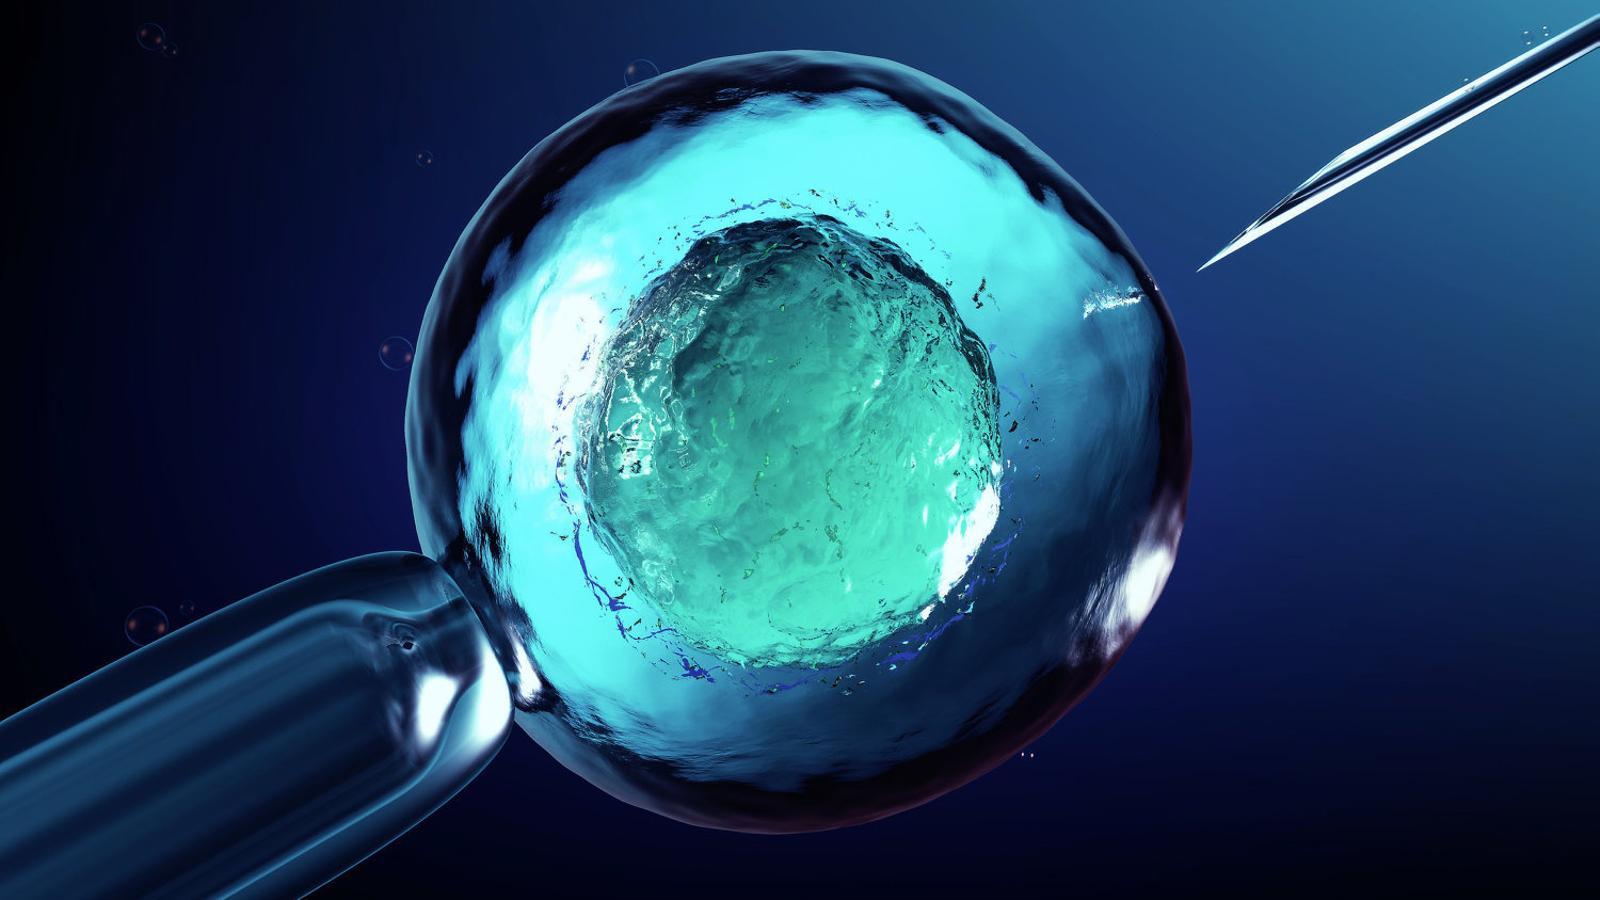 Imatge d’una fecundació in vitro, la tecnologia que ha fet servir el científic xinès per obtenir els embrions que després han sigut manipulats genèticament. / GETTY